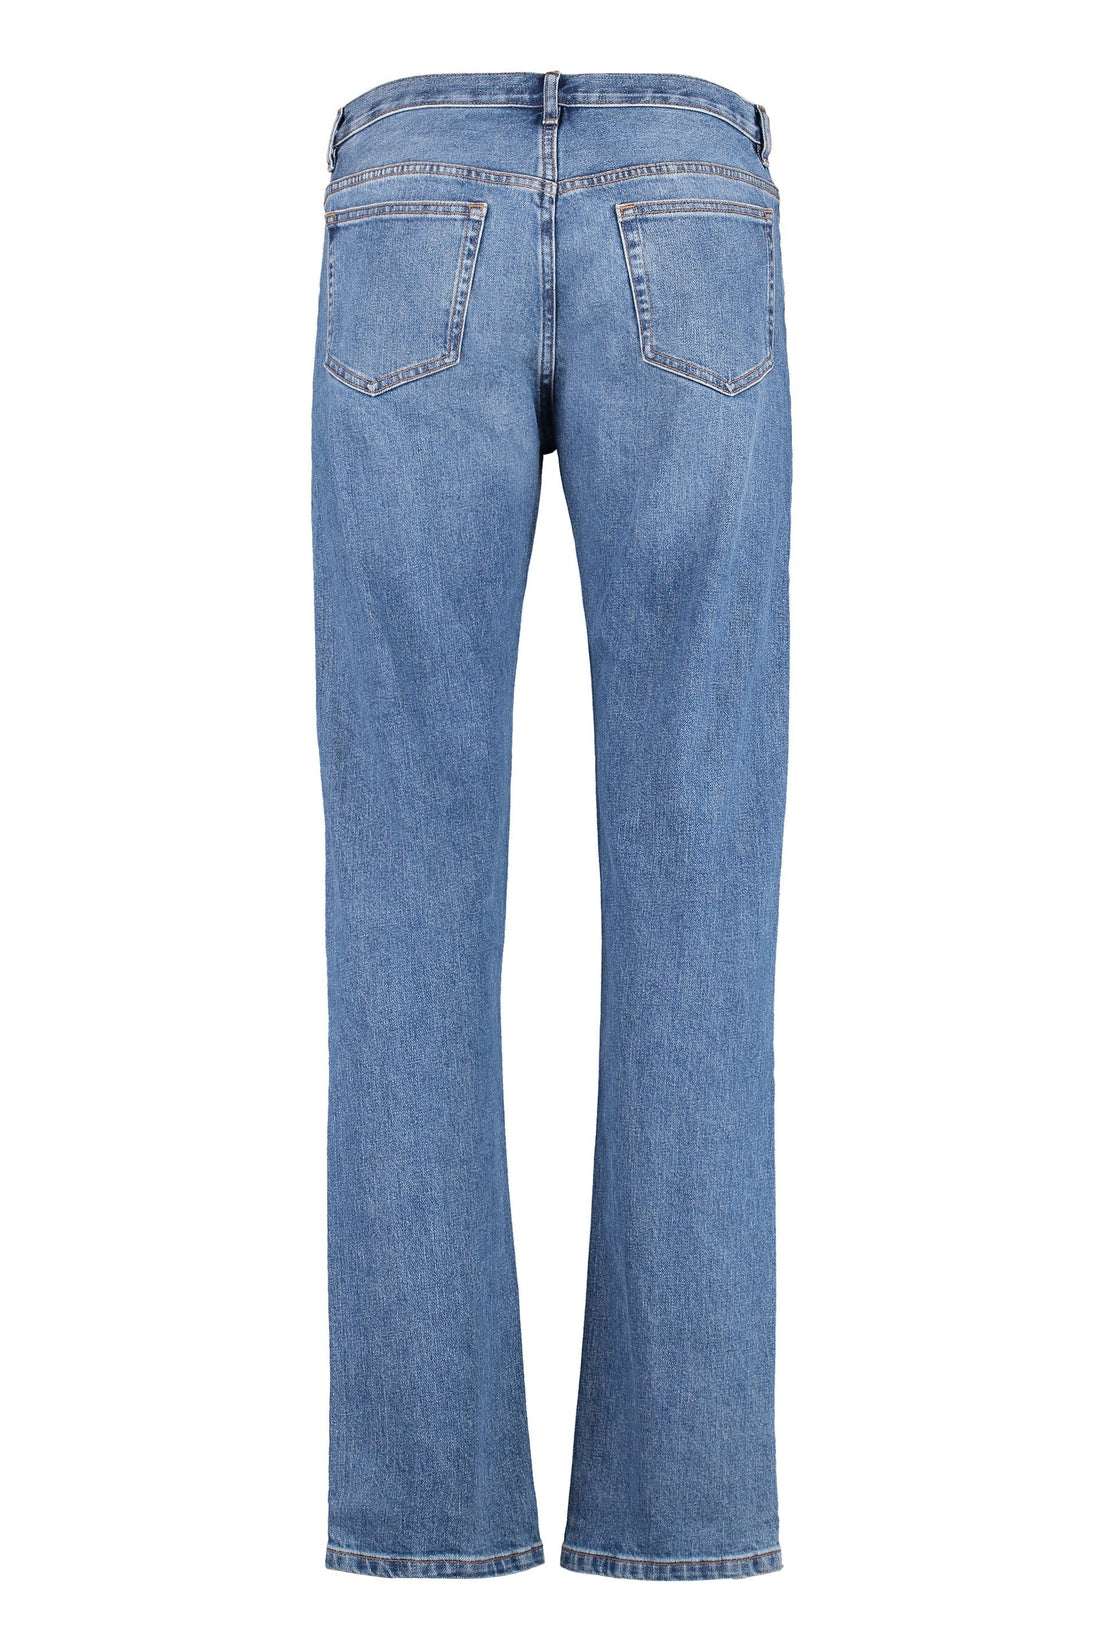 A.P.C.-OUTLET-SALE-Jeans New Standard-ARCHIVIST